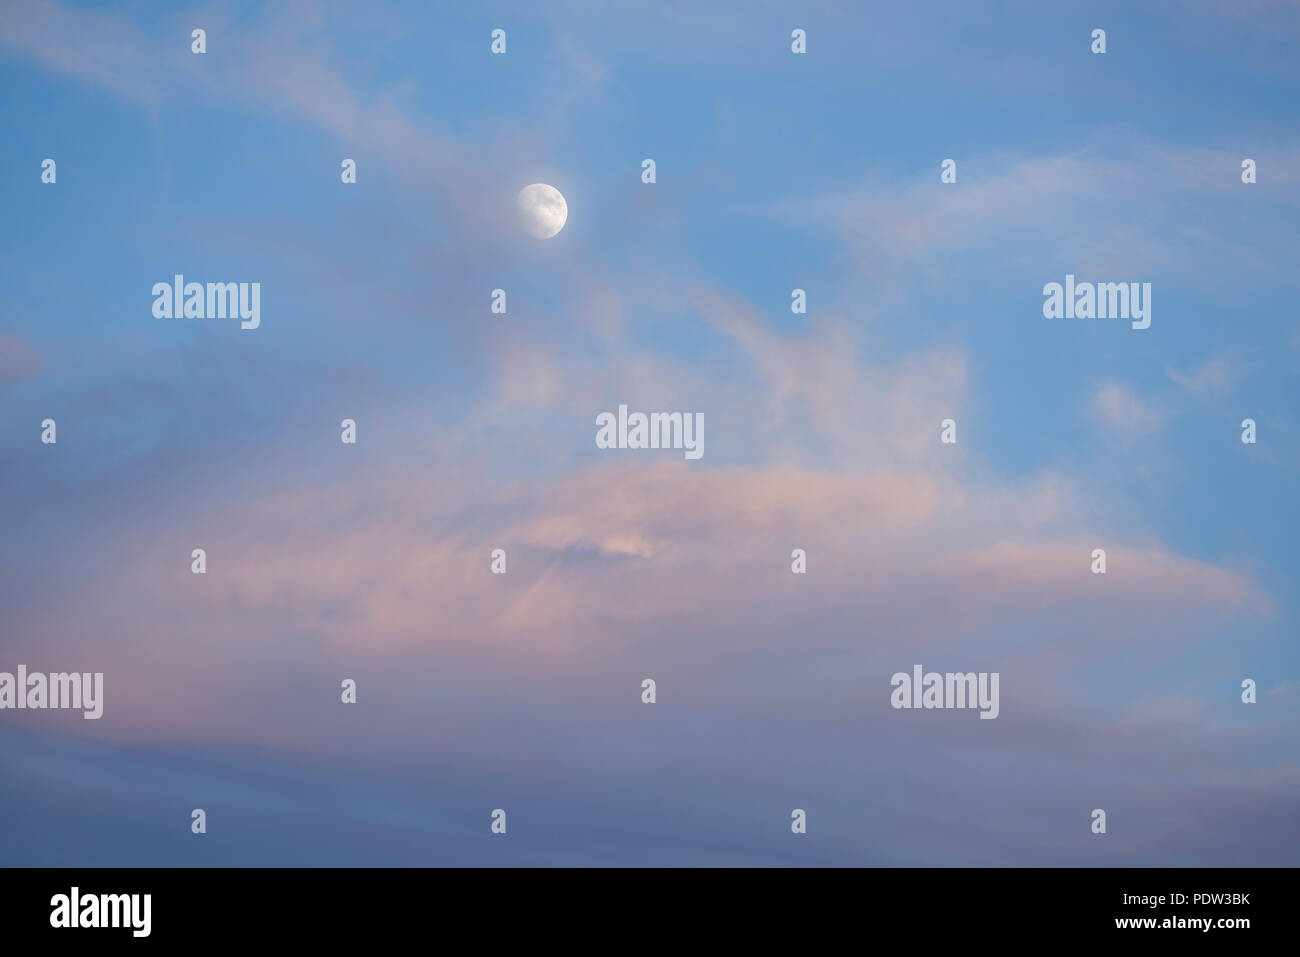 Lune gibbeuse contre un ciel bleu au crépuscule partiellement obscurci par les nuages Altocumulus rose. Vu de l'hémisphère Nord. Banque D'Images